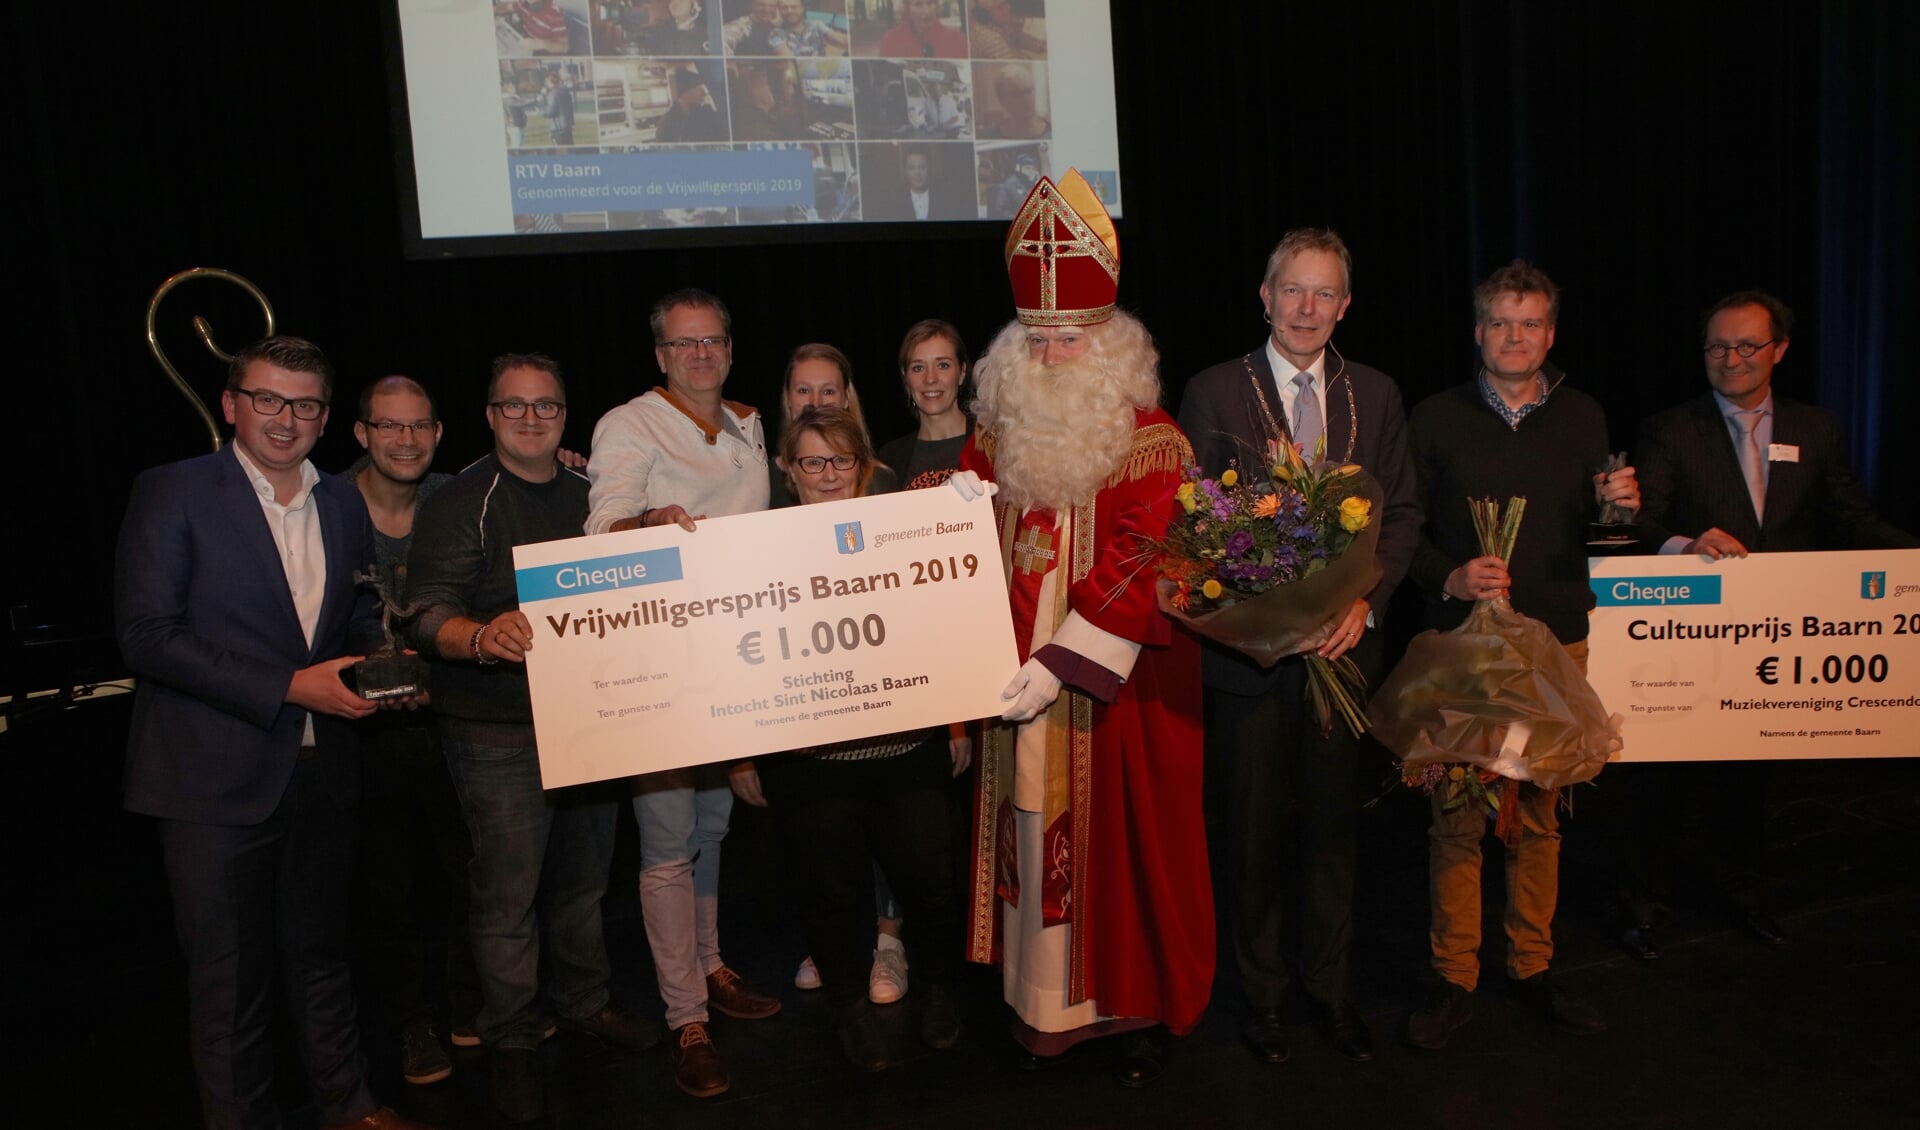 Stichting Intocht Sint Nicolaas en Baarn en Crescendo vielen in 2019 in de prijzen.